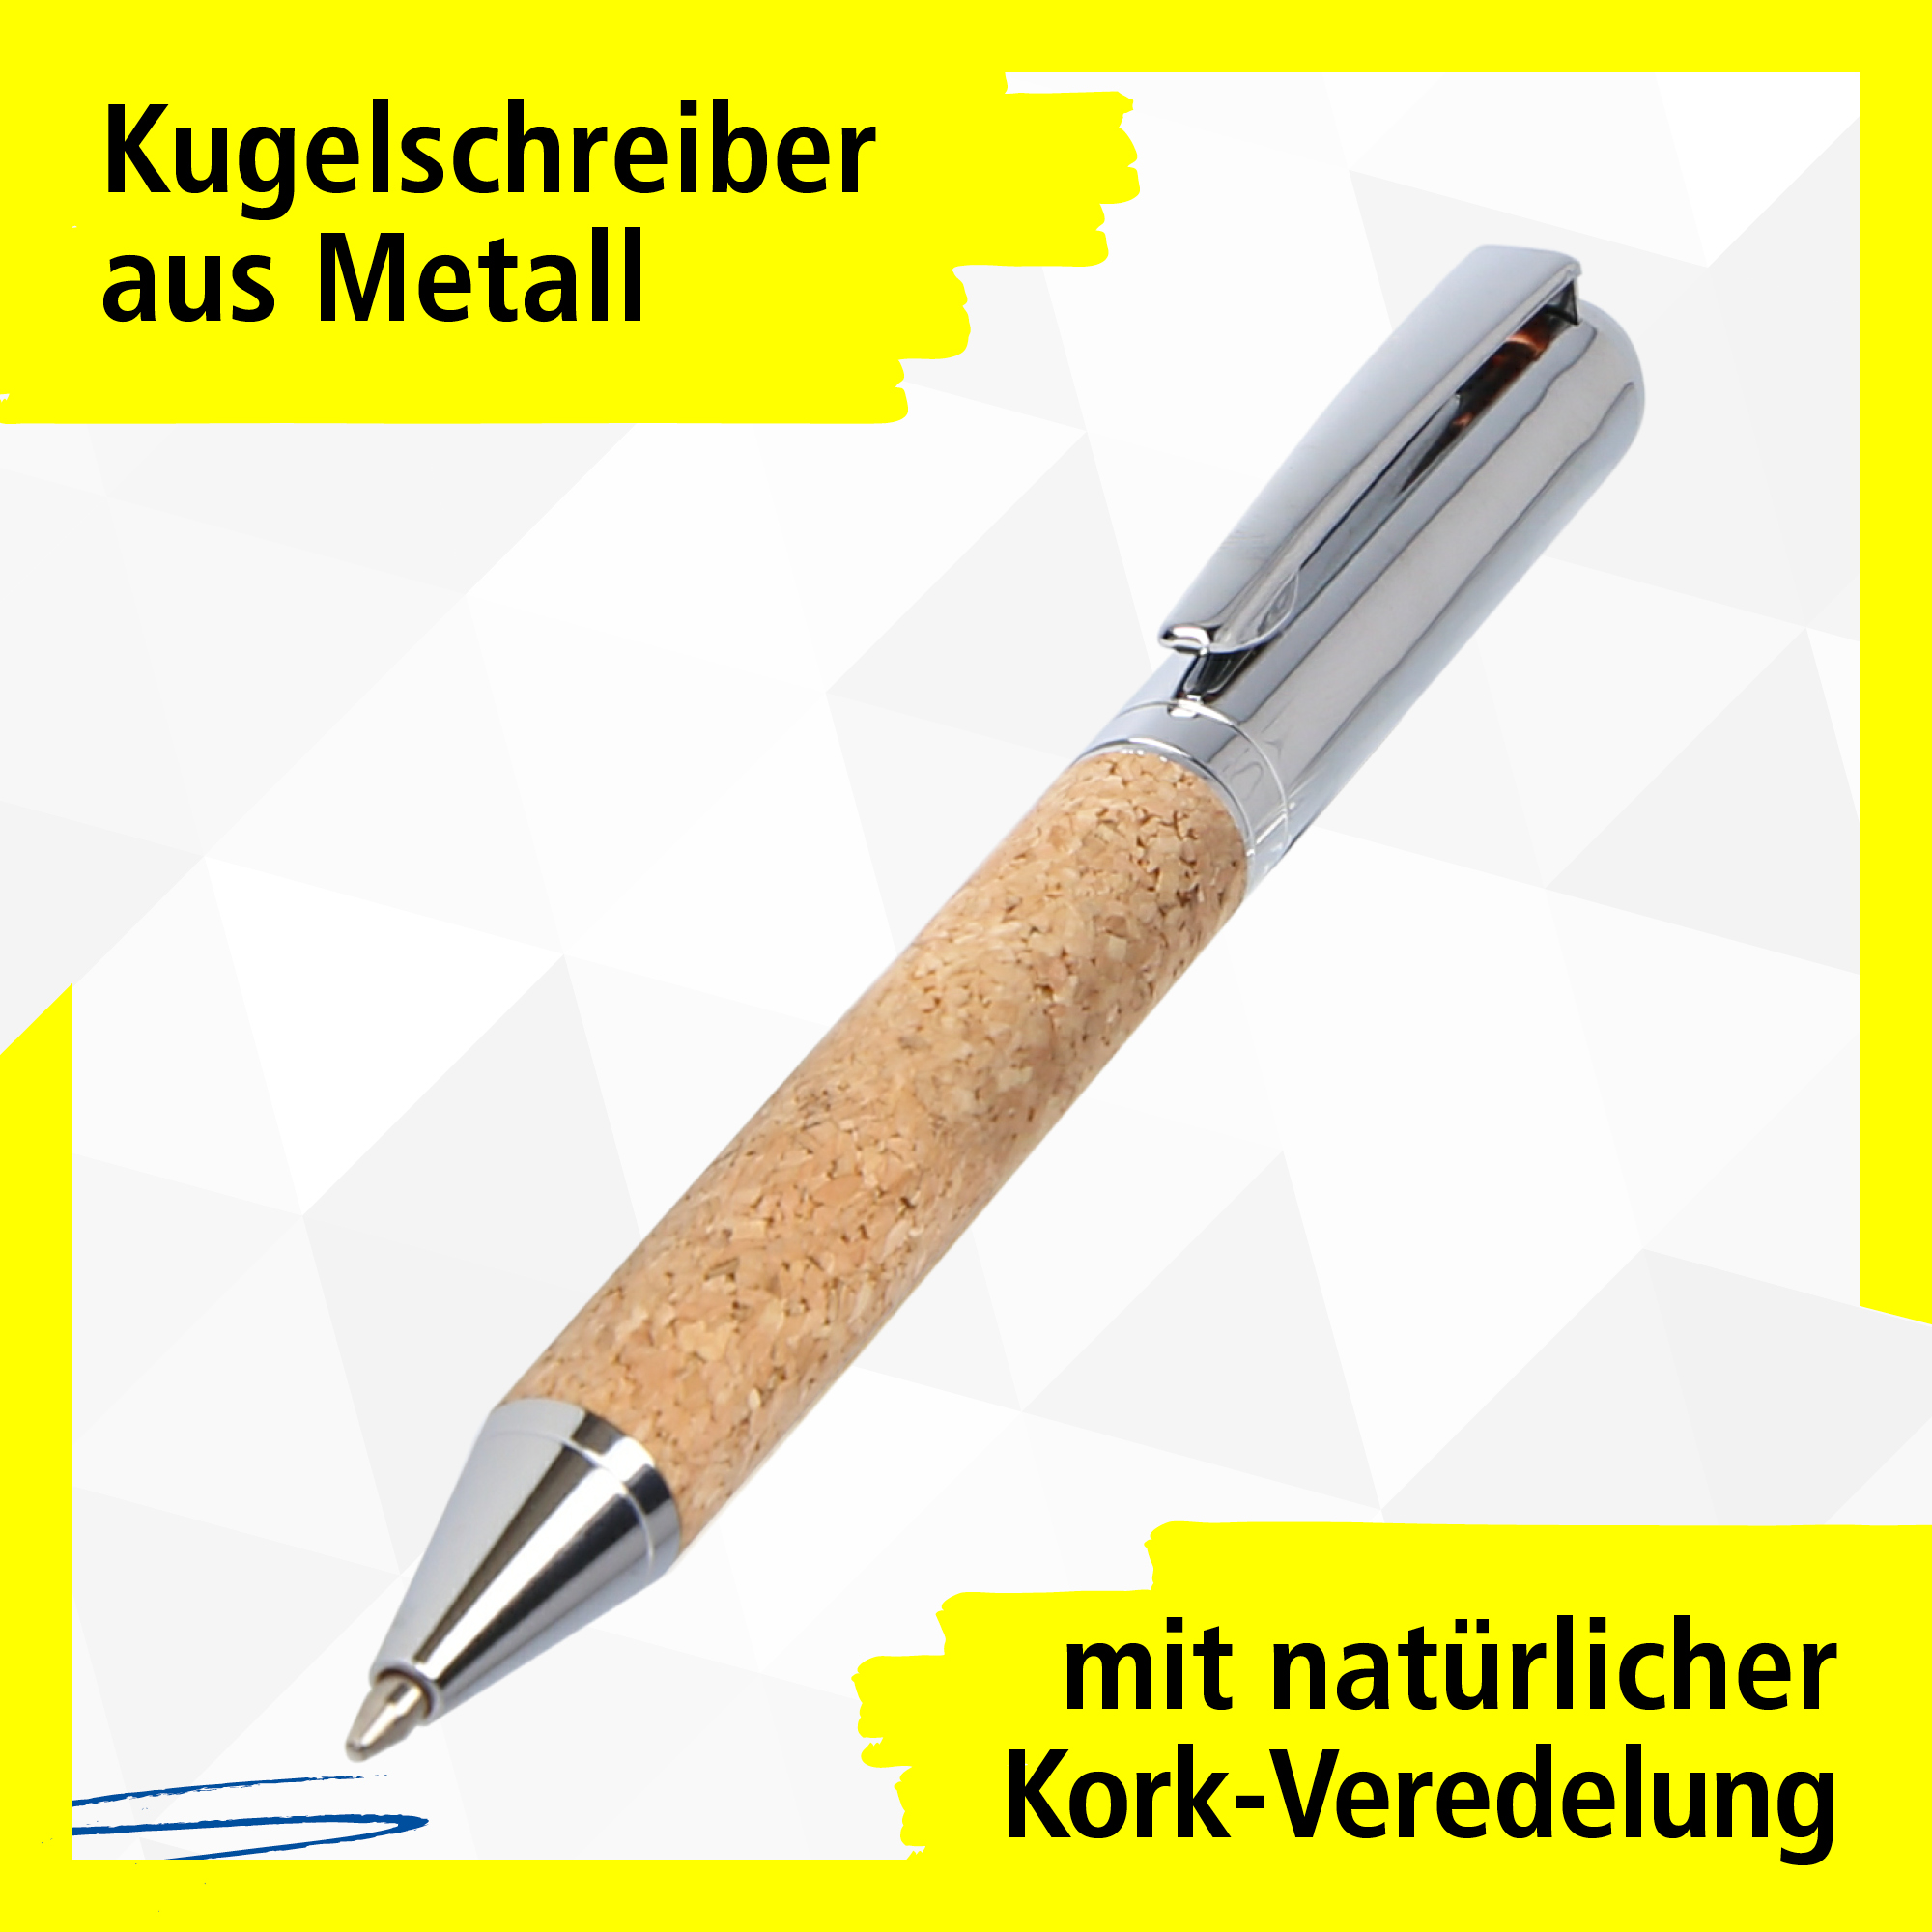 Kugelschreiber aus Metall mit natürlicher Kork-Veredelung